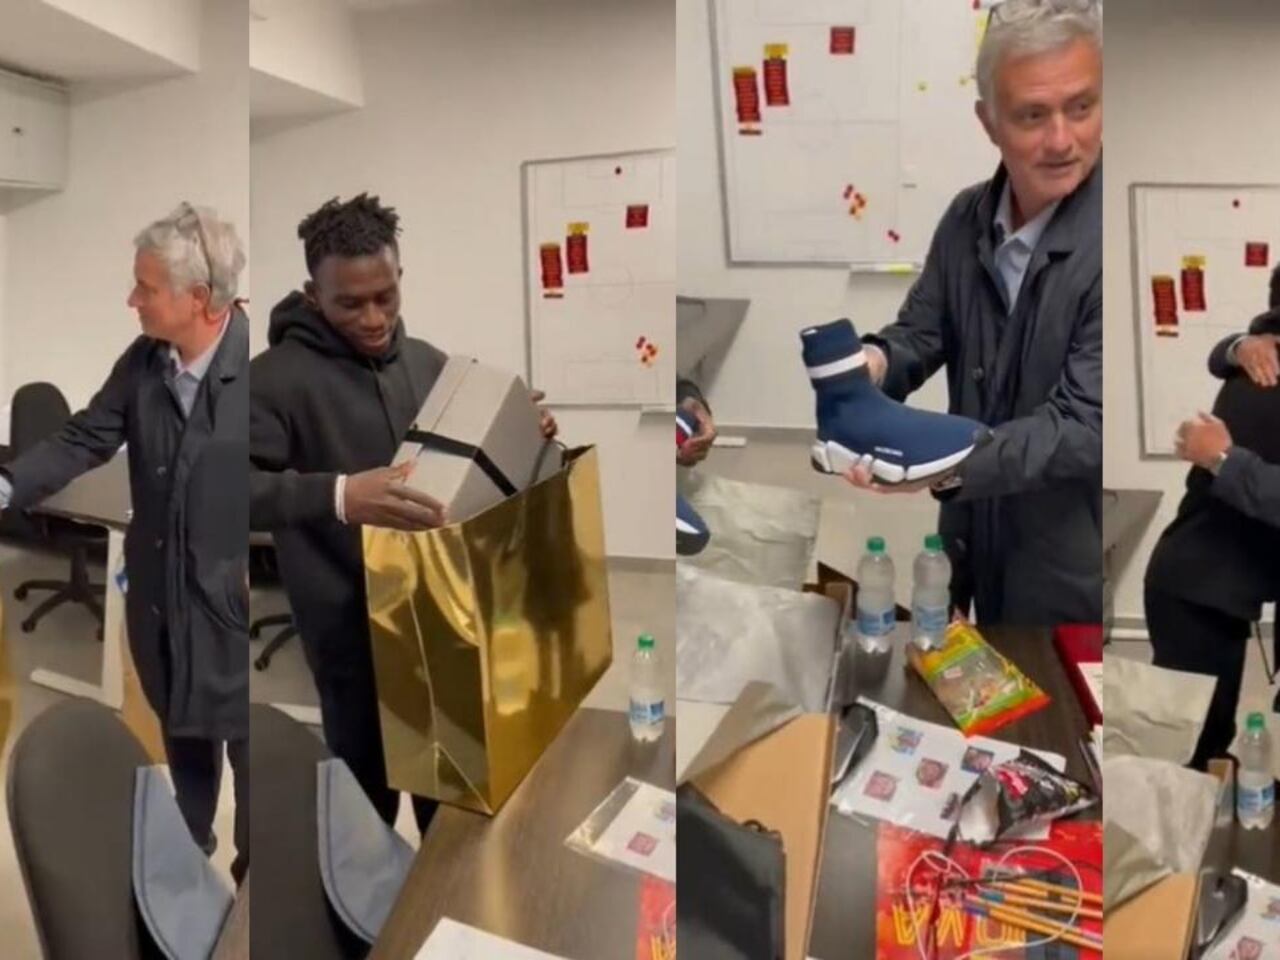 El costoso y sorpresivo regalo de Mourinho a uno de sus futbolistas